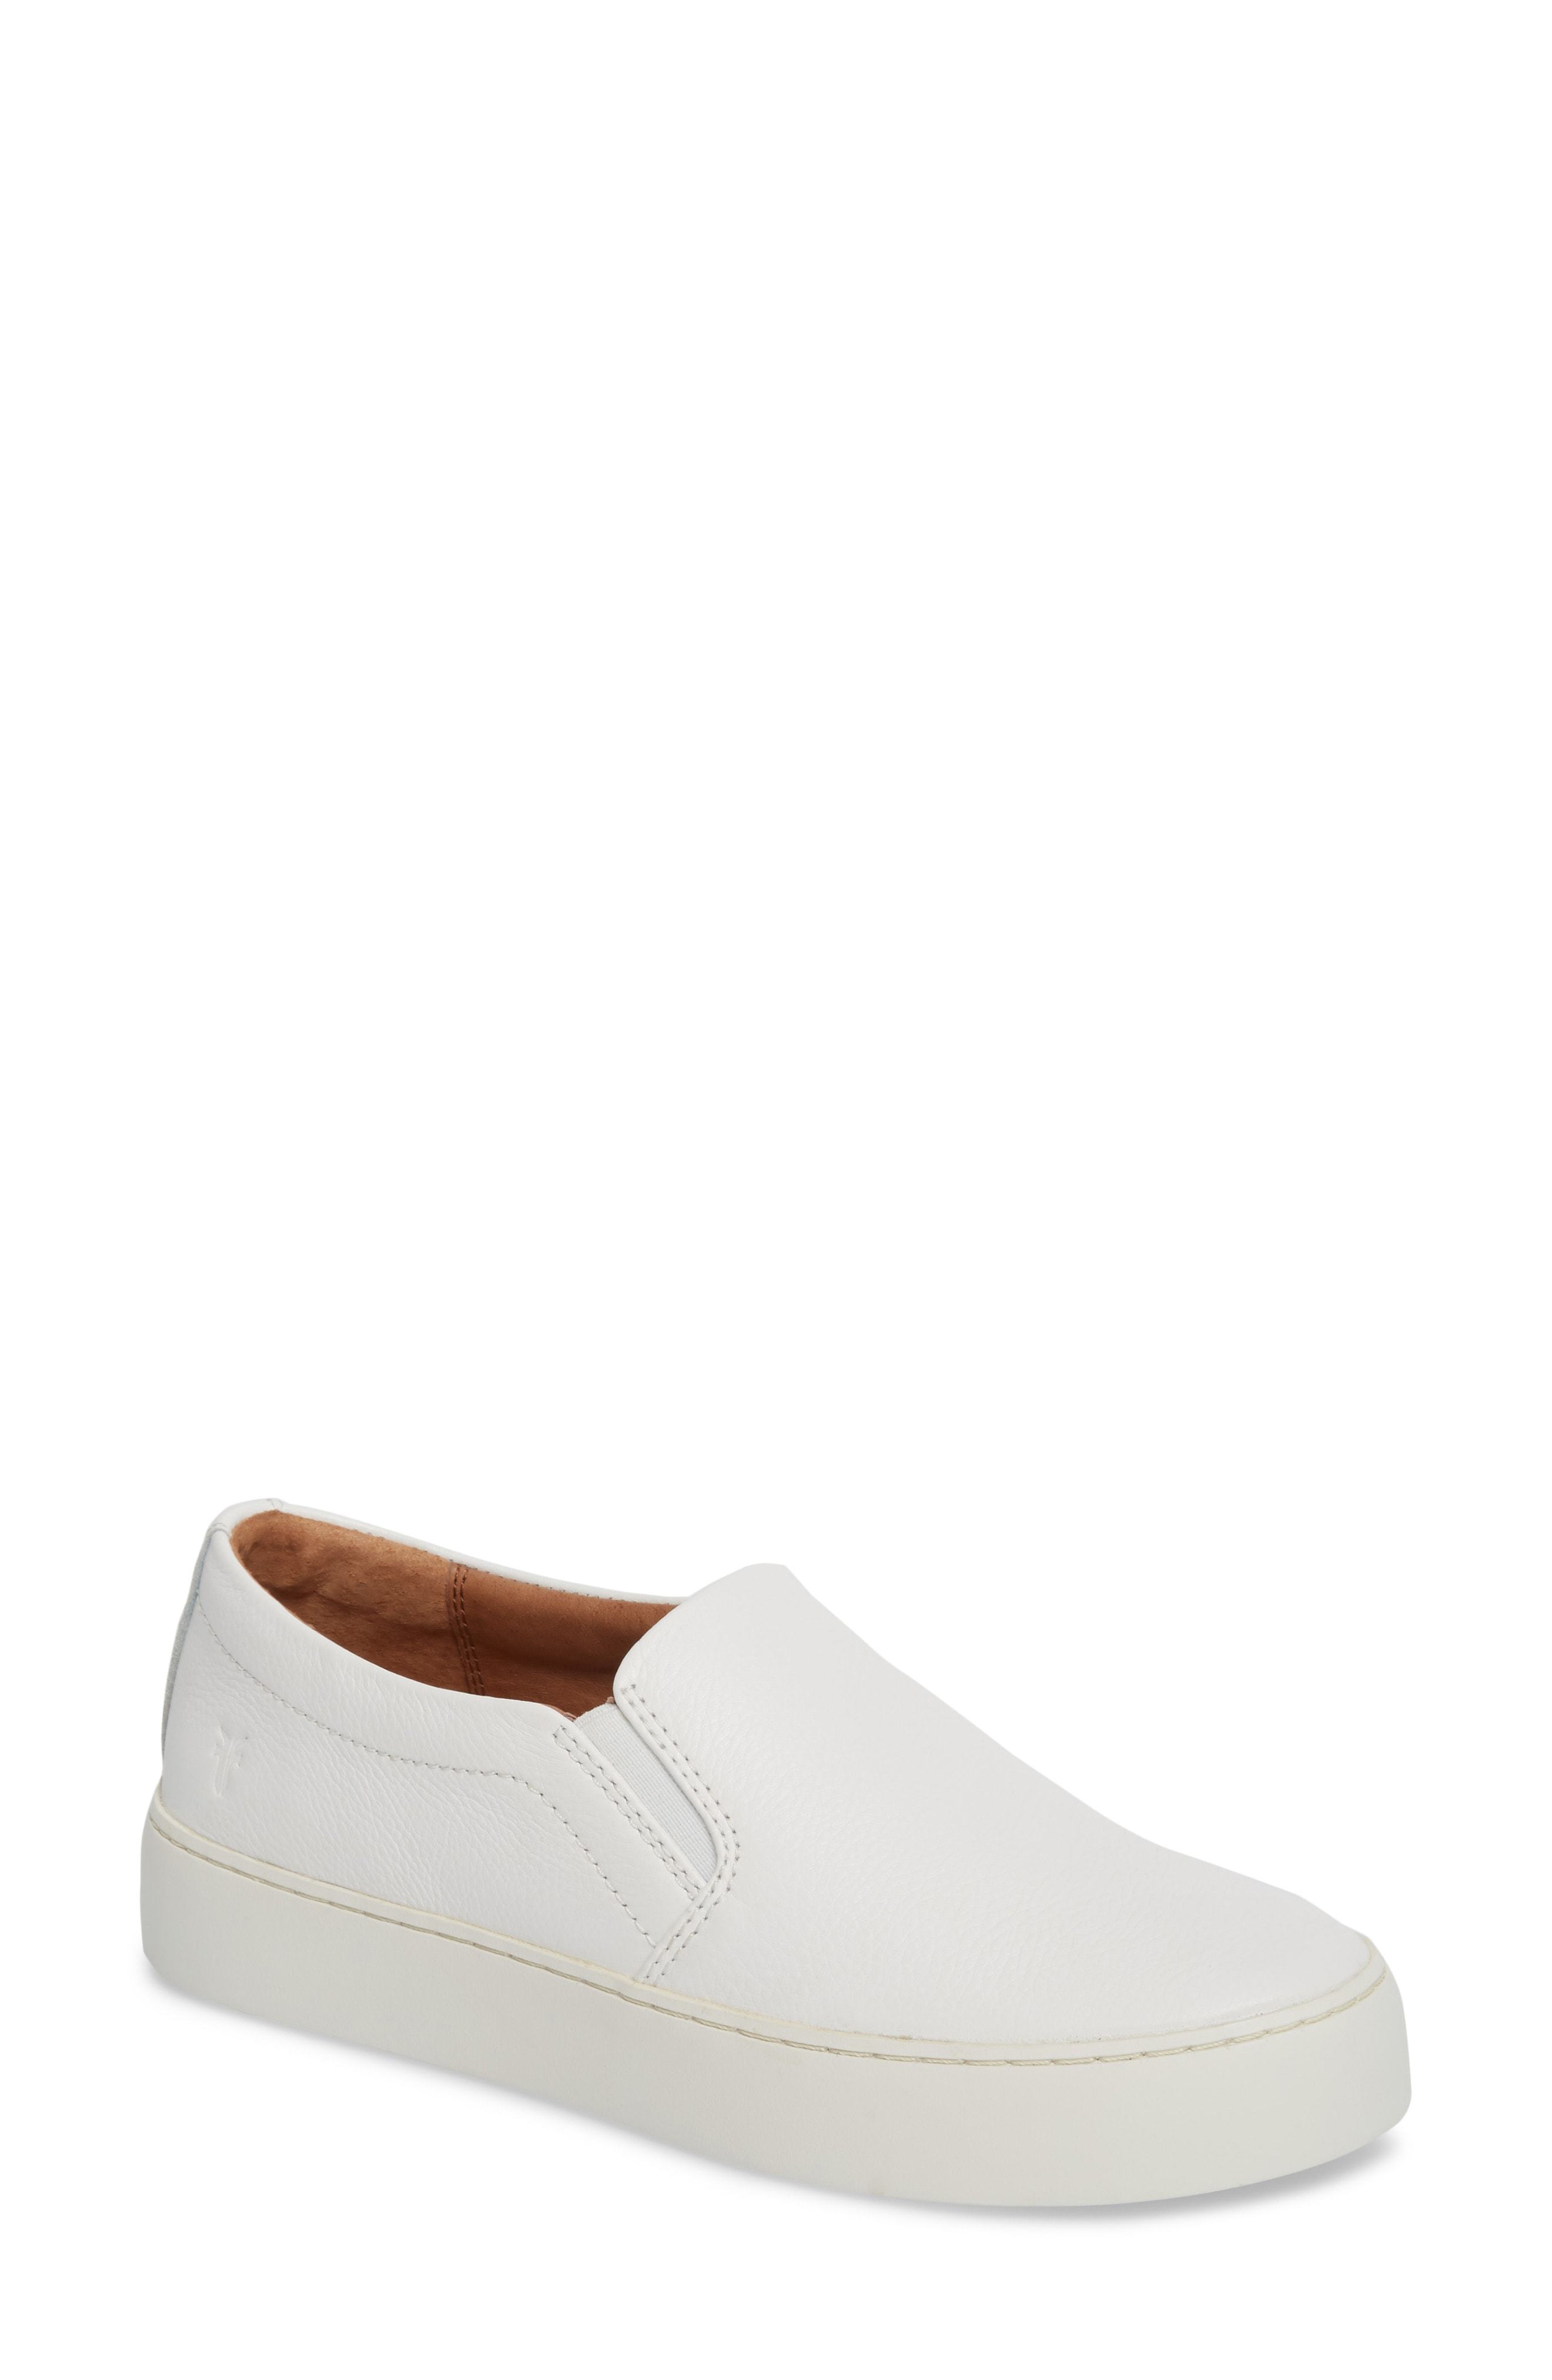 Frye Lena Slip On Sneaker, $99 | Nordstrom | Lookastic